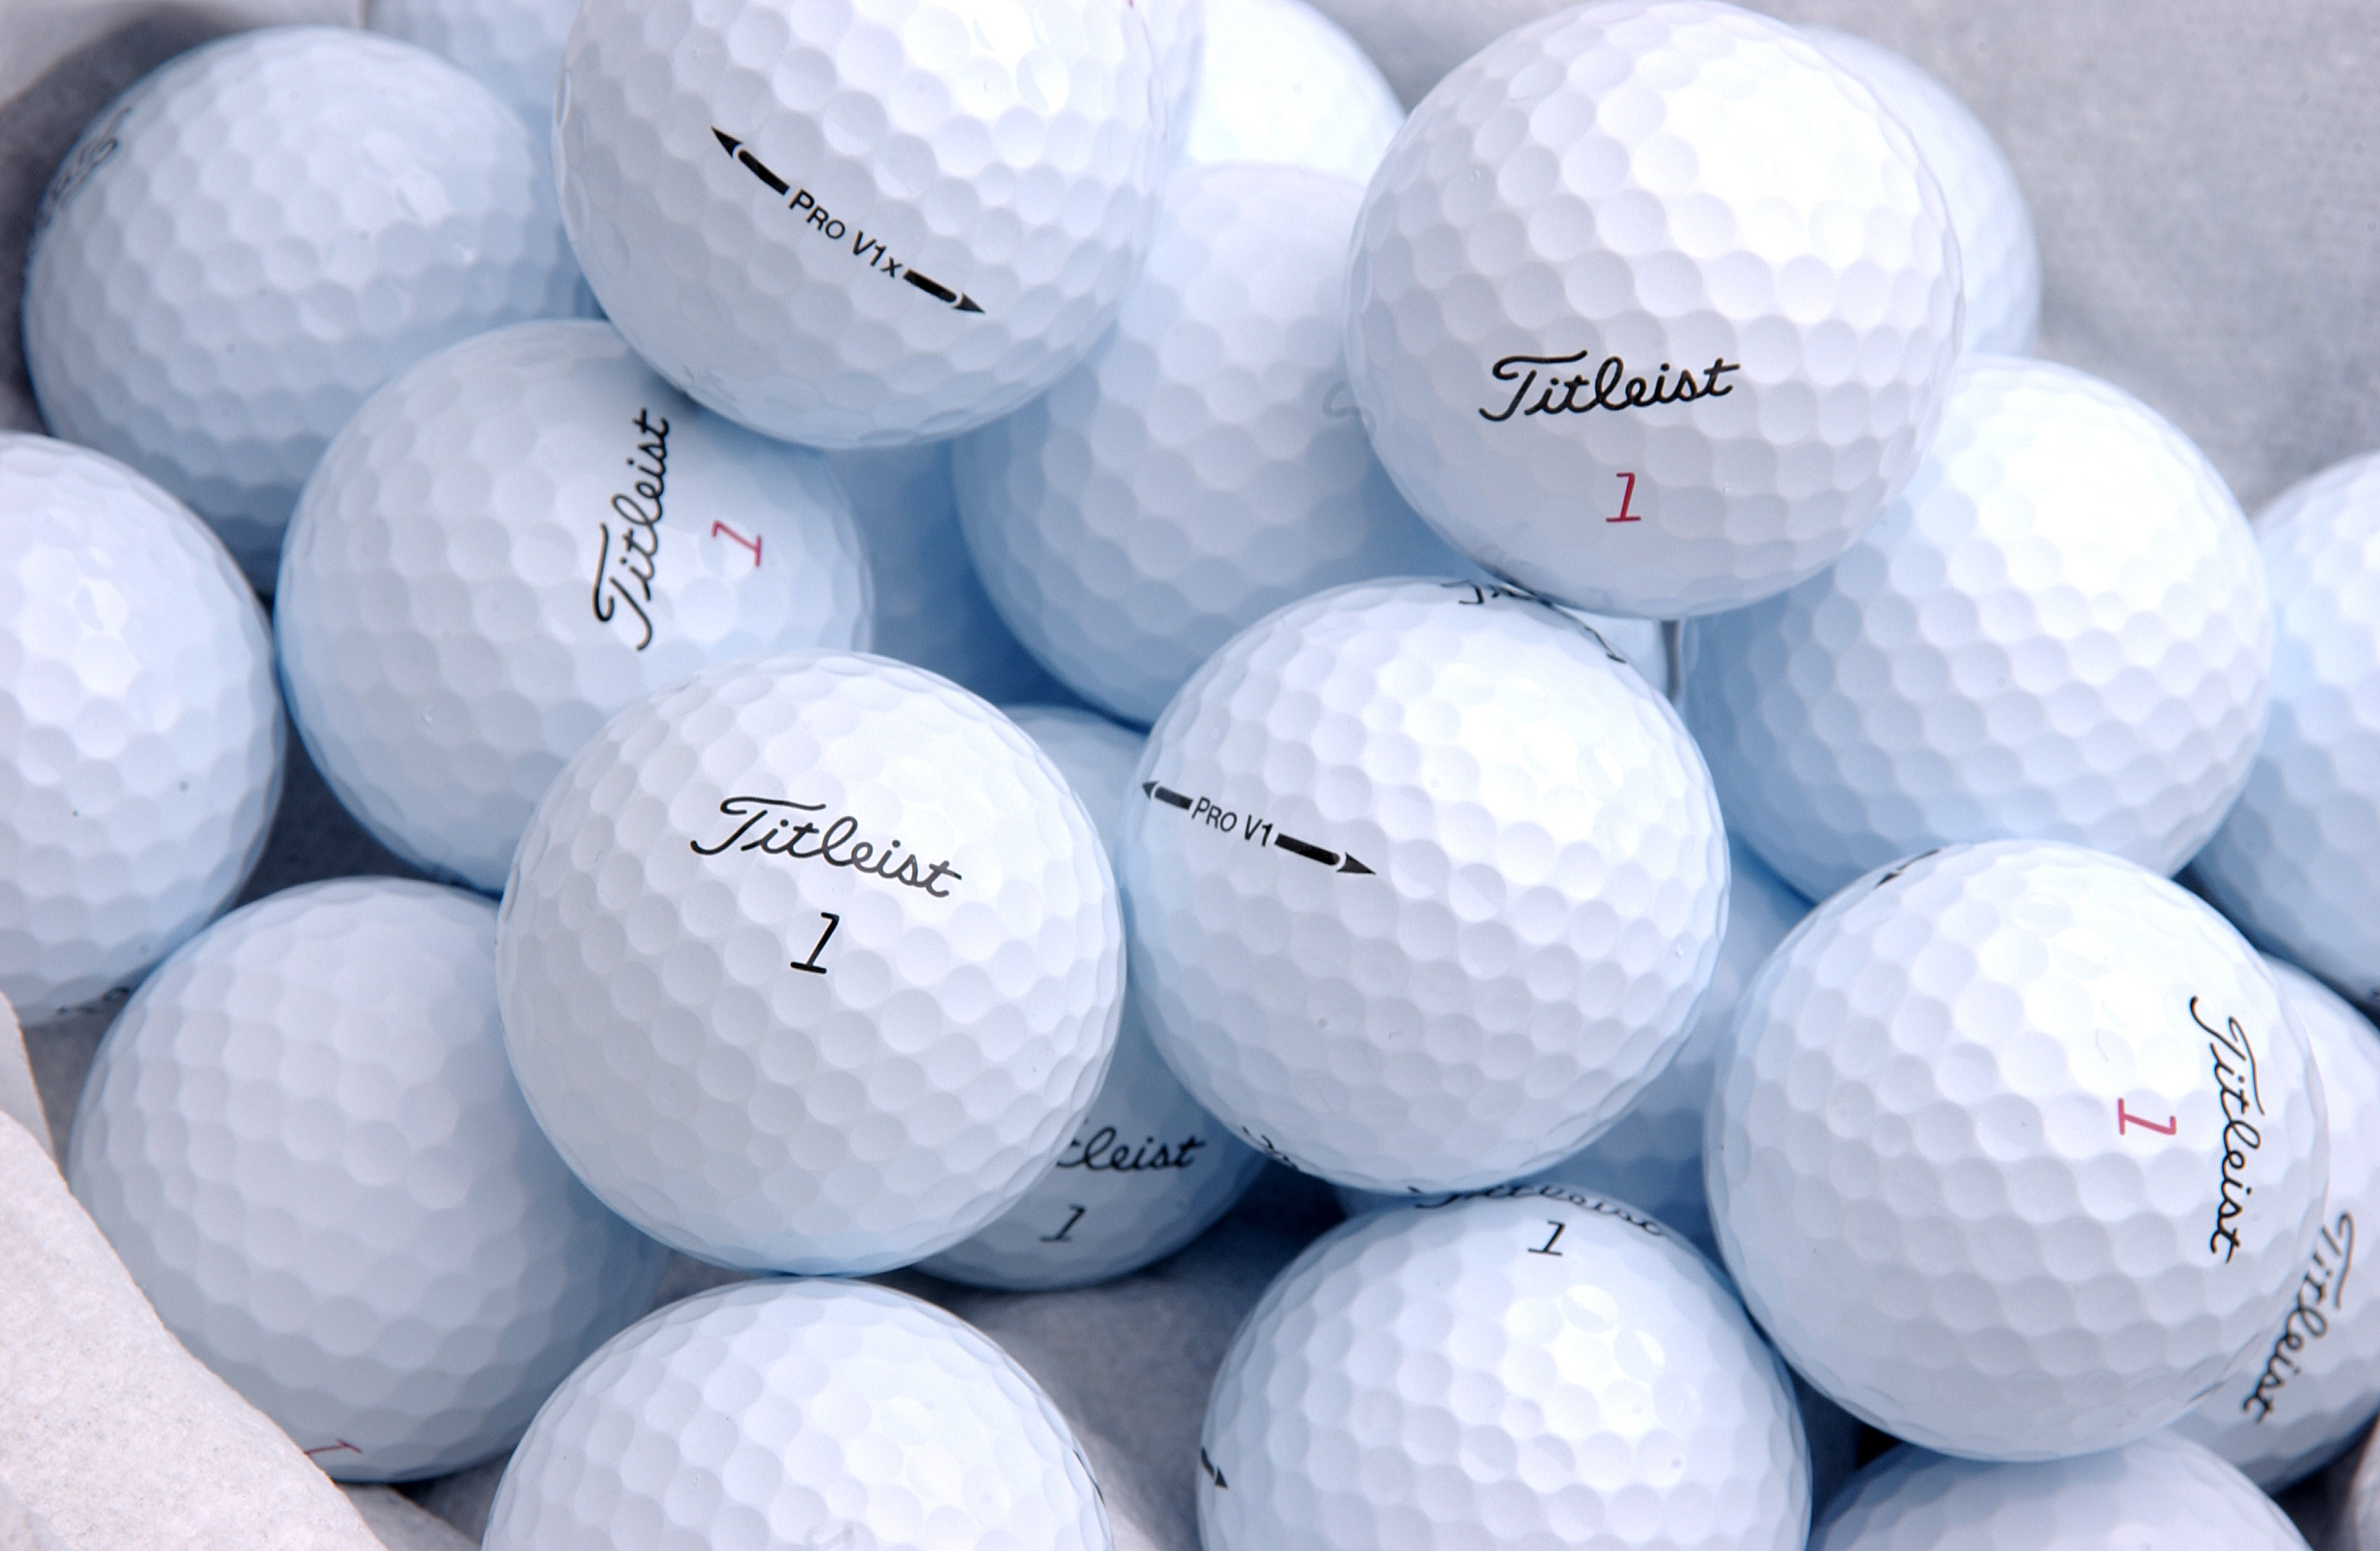 3008x1960 I love titleist golf balls!